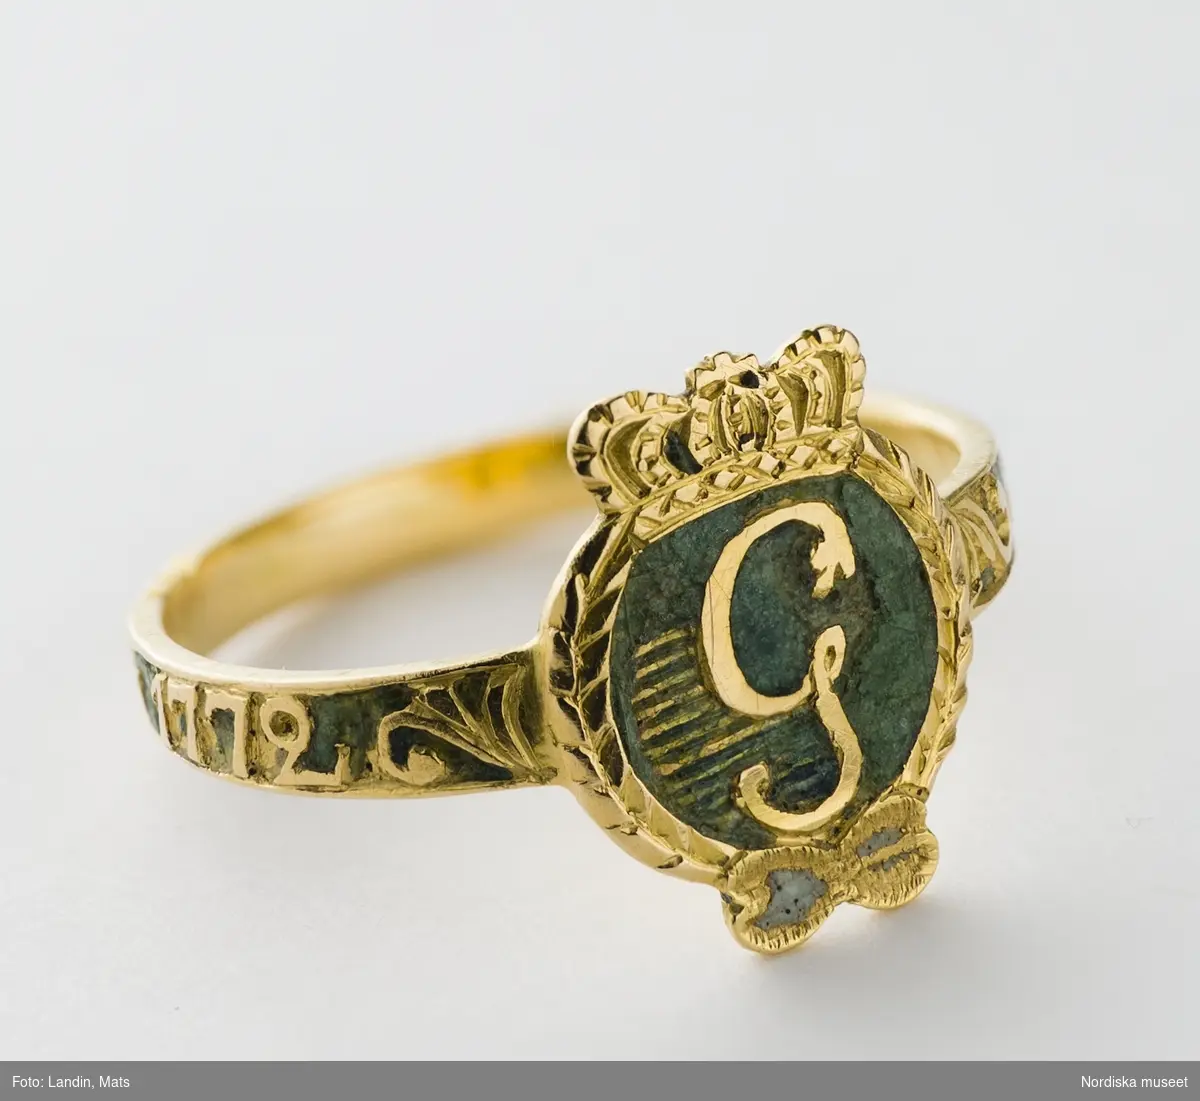 Ring av rött guld,  med Gustav III:s monogram i guld mot grön emaljbotten, s.k. revolutionsring. Runt skenan graverad inskription "den 19 aug 1772". 
/Ingrid Roos 2006-09-26